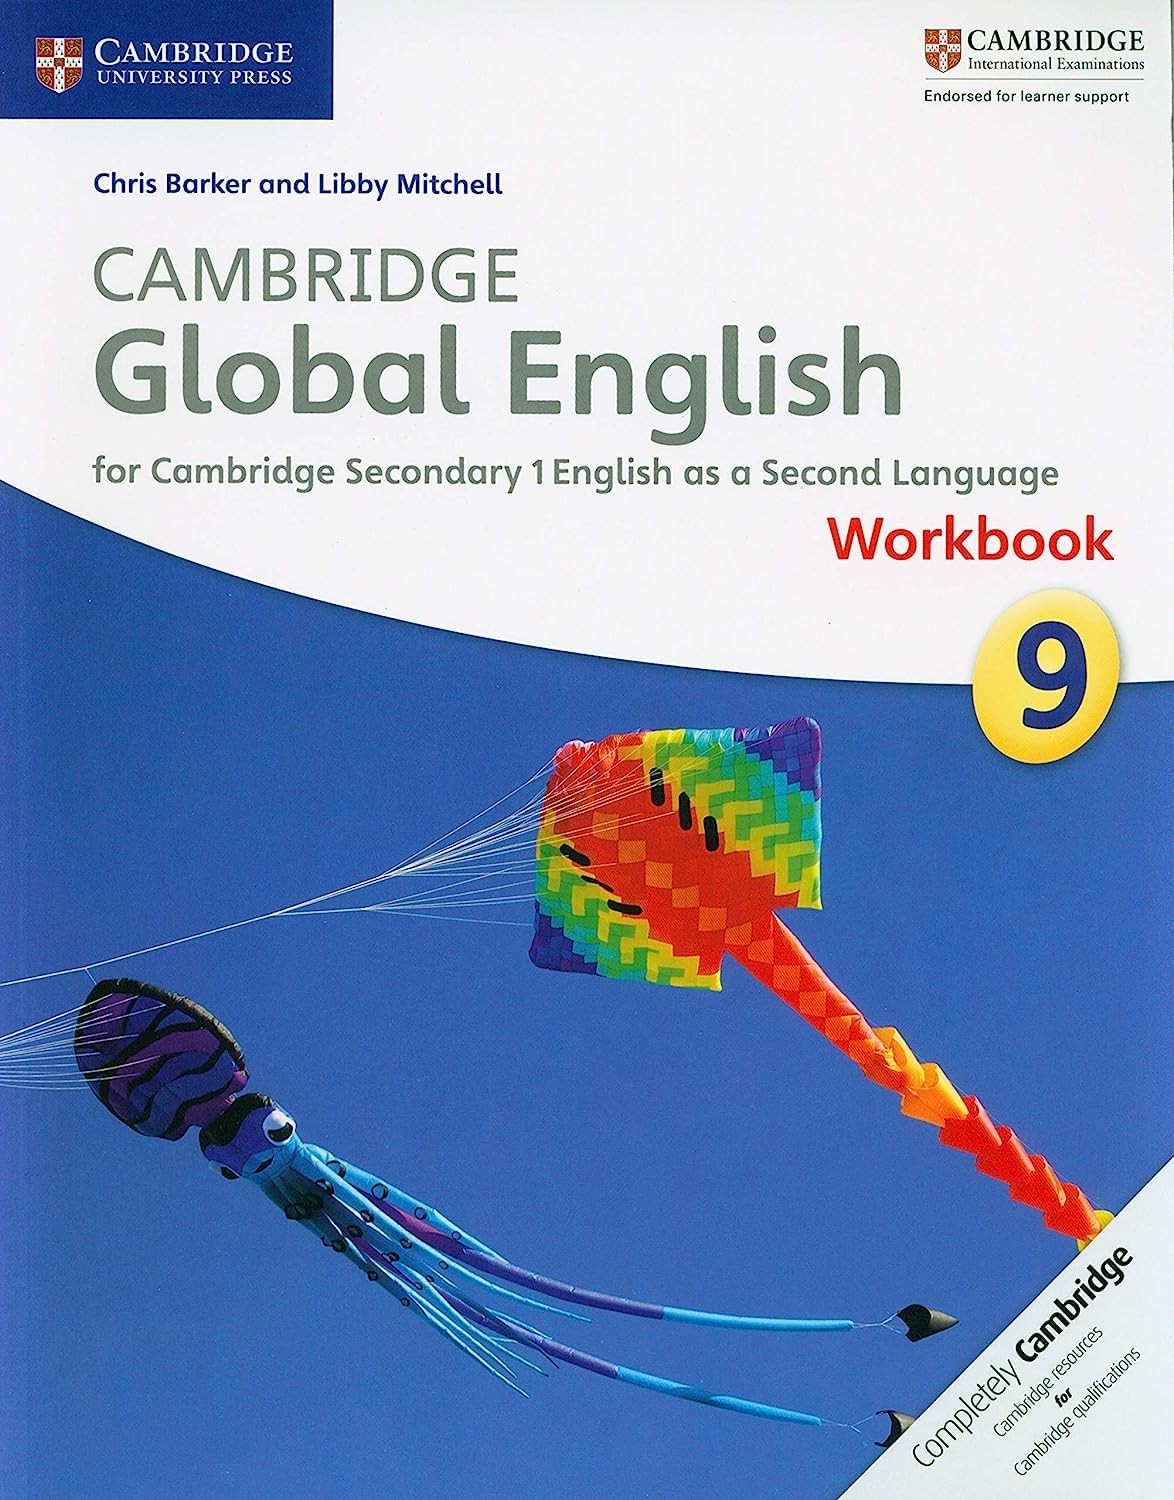 Cambridge Global English Workbook 9